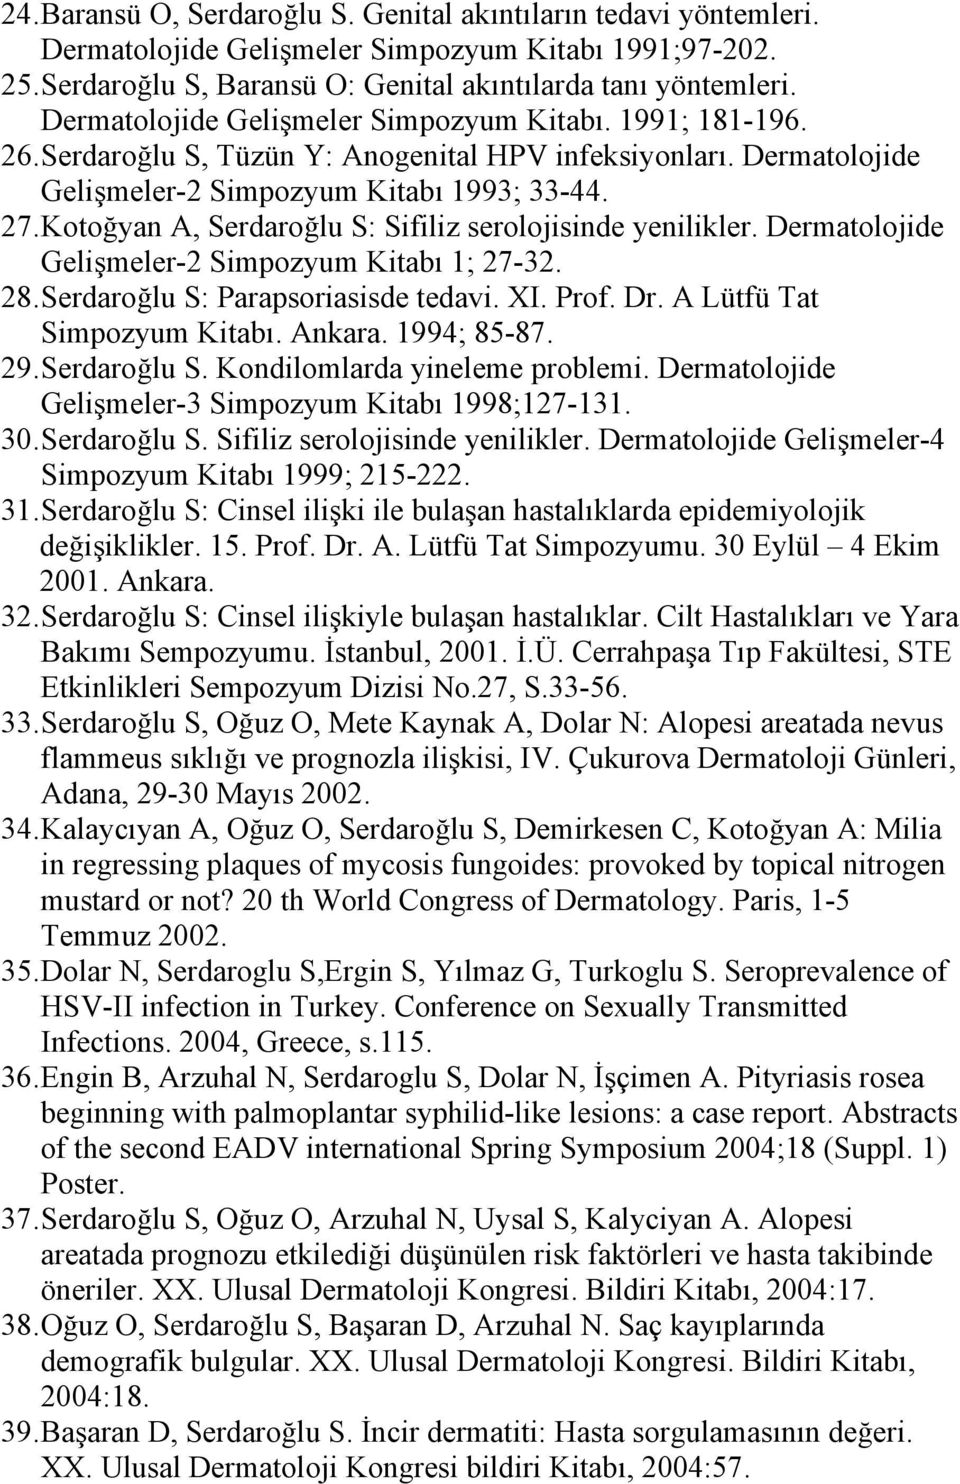 Kotoğyan A, Serdaroğlu S: Sifiliz serolojisinde yenilikler. Dermatolojide Gelişmeler-2 Simpozyum Kitabı 1; 27-32. 28. Serdaroğlu S: Parapsoriasisde tedavi. XI. Prof. Dr. A Lütfü Tat Simpozyum Kitabı.